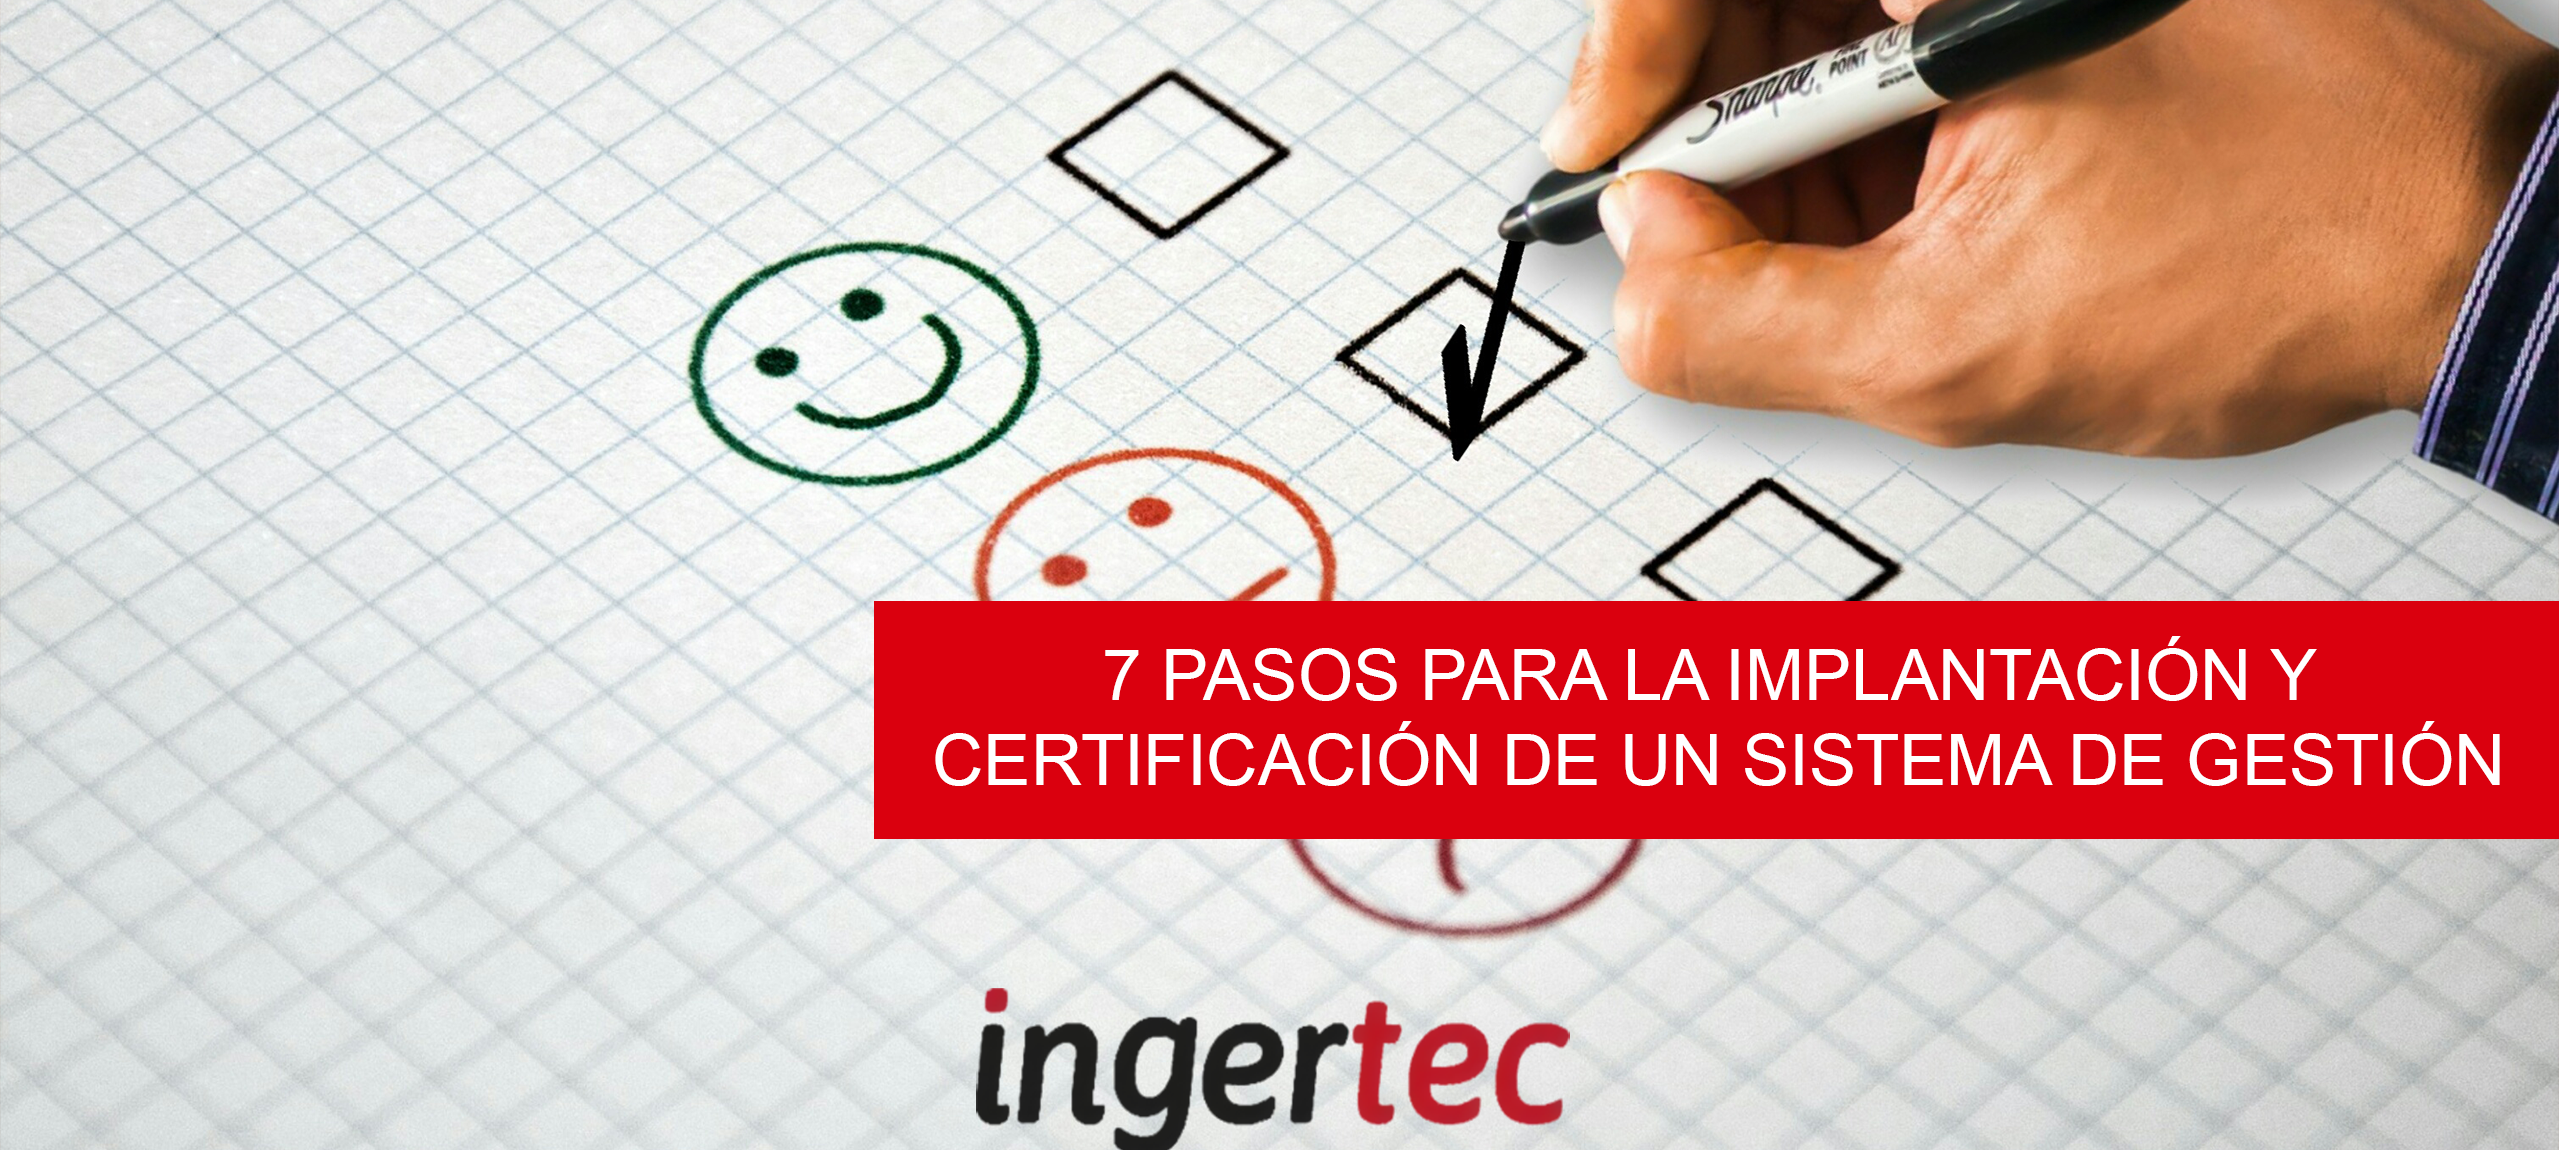 7 pasos para la implantación y certificación de un sistema de gestión